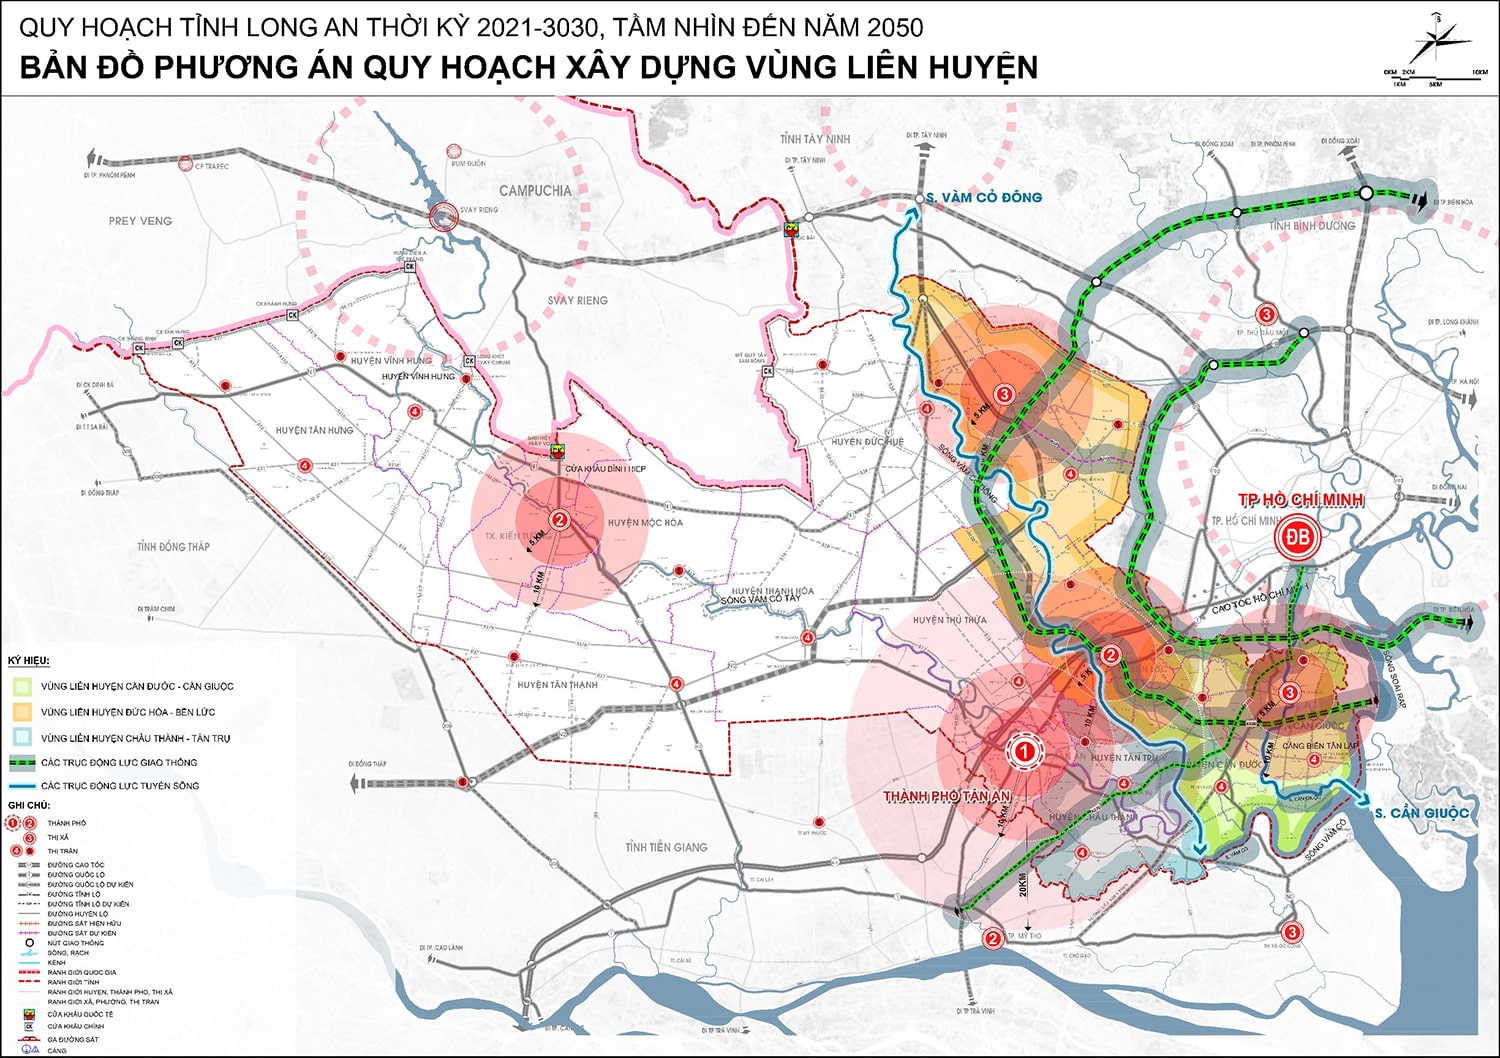 Phương án quy hoạch vùng liên huyện tỉnh Long An đến năm 2030